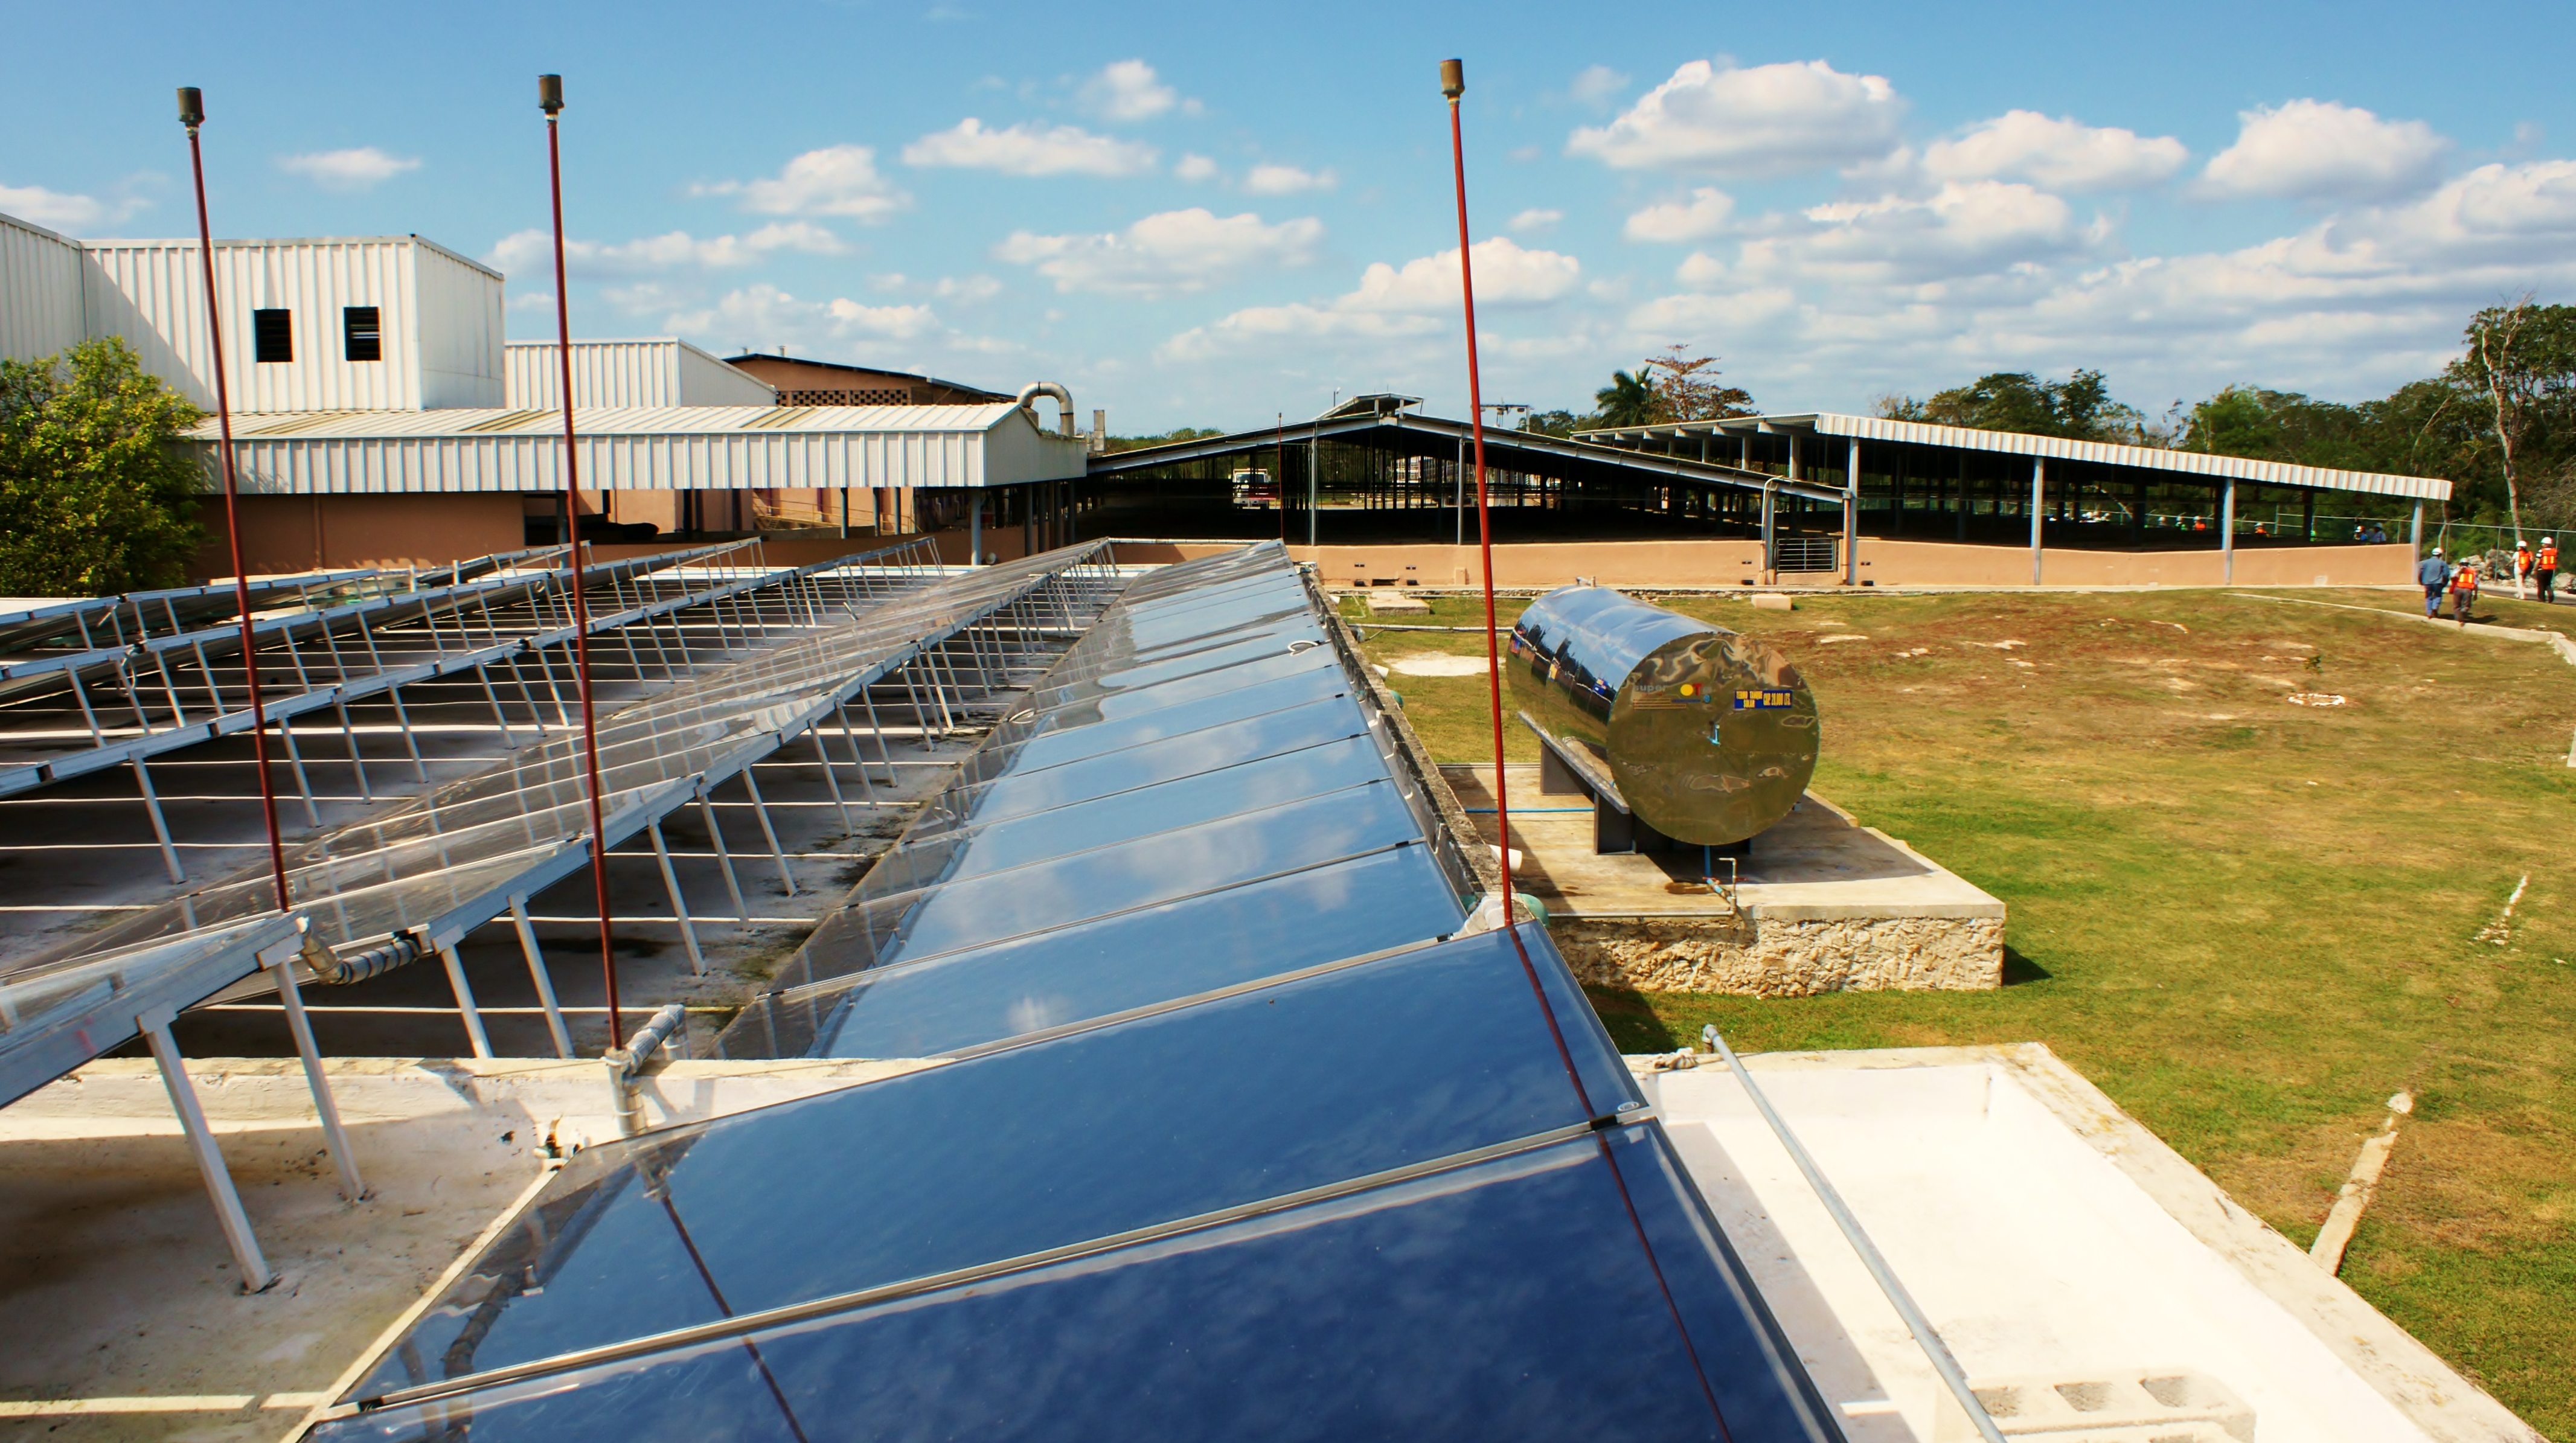 Batería de paneles solares para calentamiento de agua para usarla en los procesos de una granja porcina 